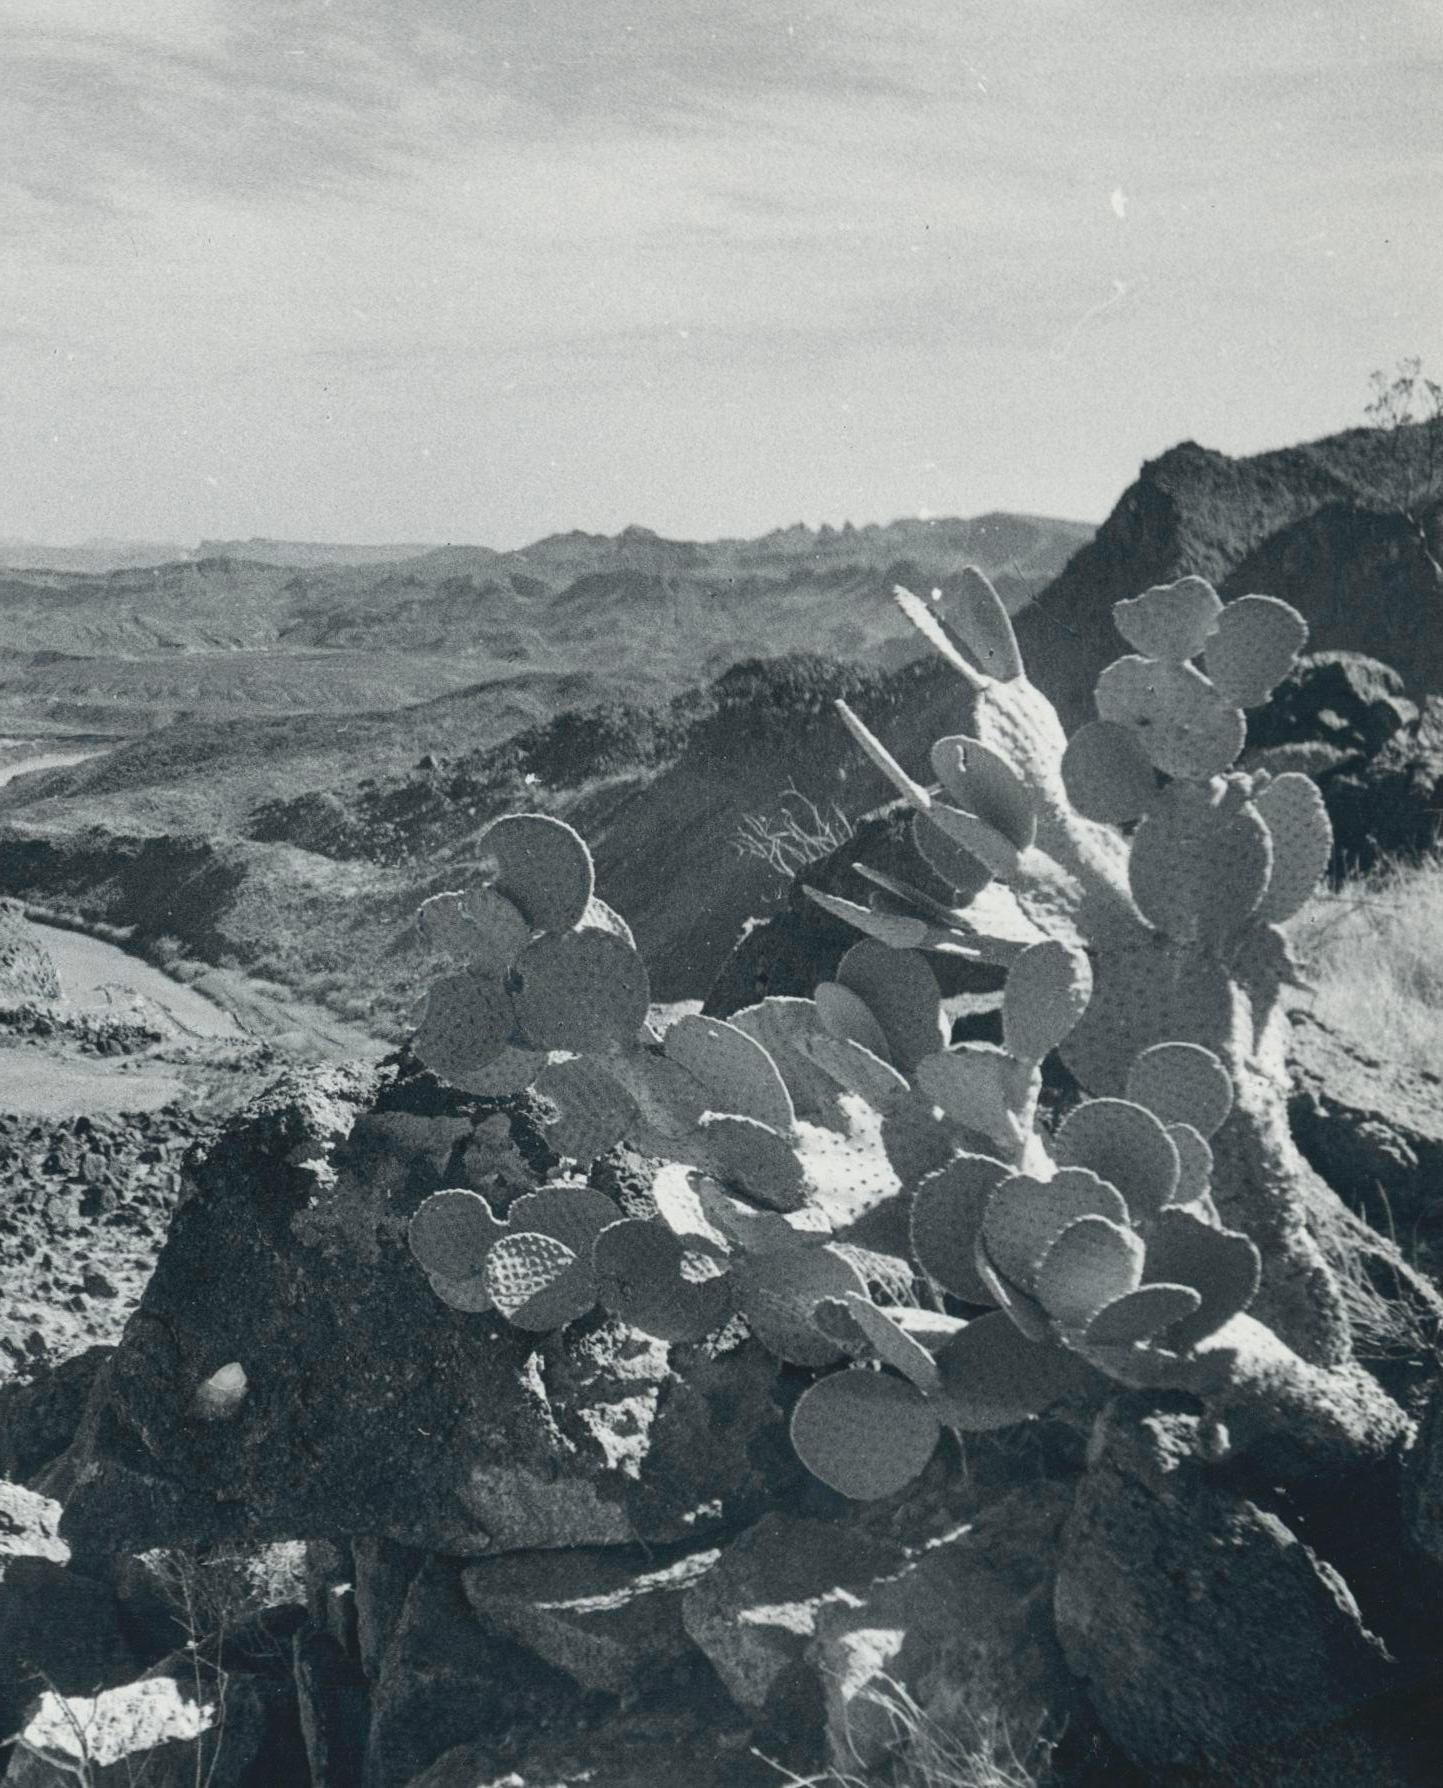 Cacti, Rio Grande, noir et blanc, États-Unis, 166,4 x 23,1 cm - Photograph de Erich Andres